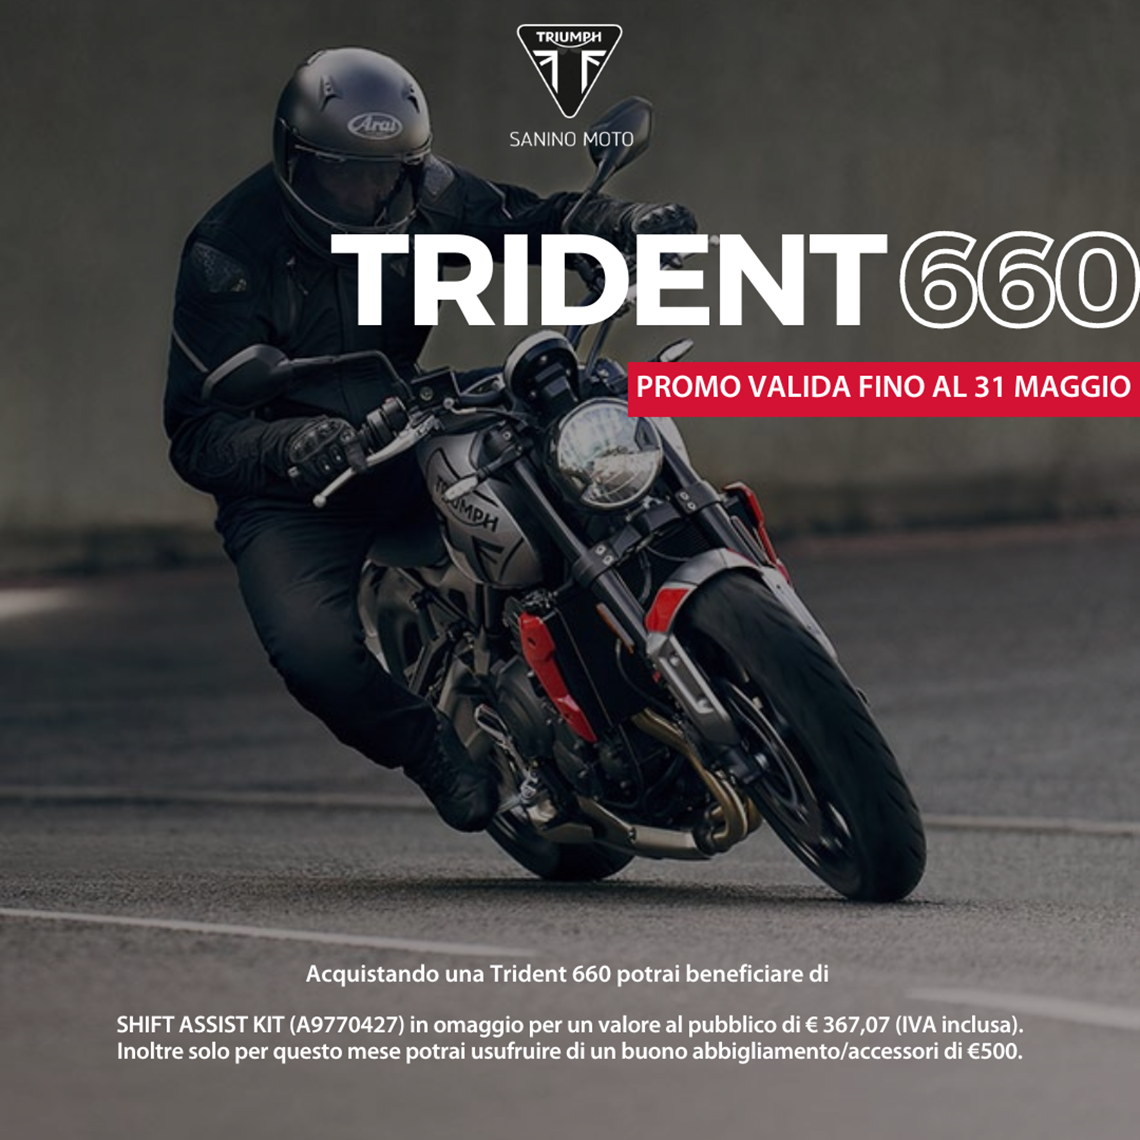 Trident 660, TUA A 81€ AL MESE